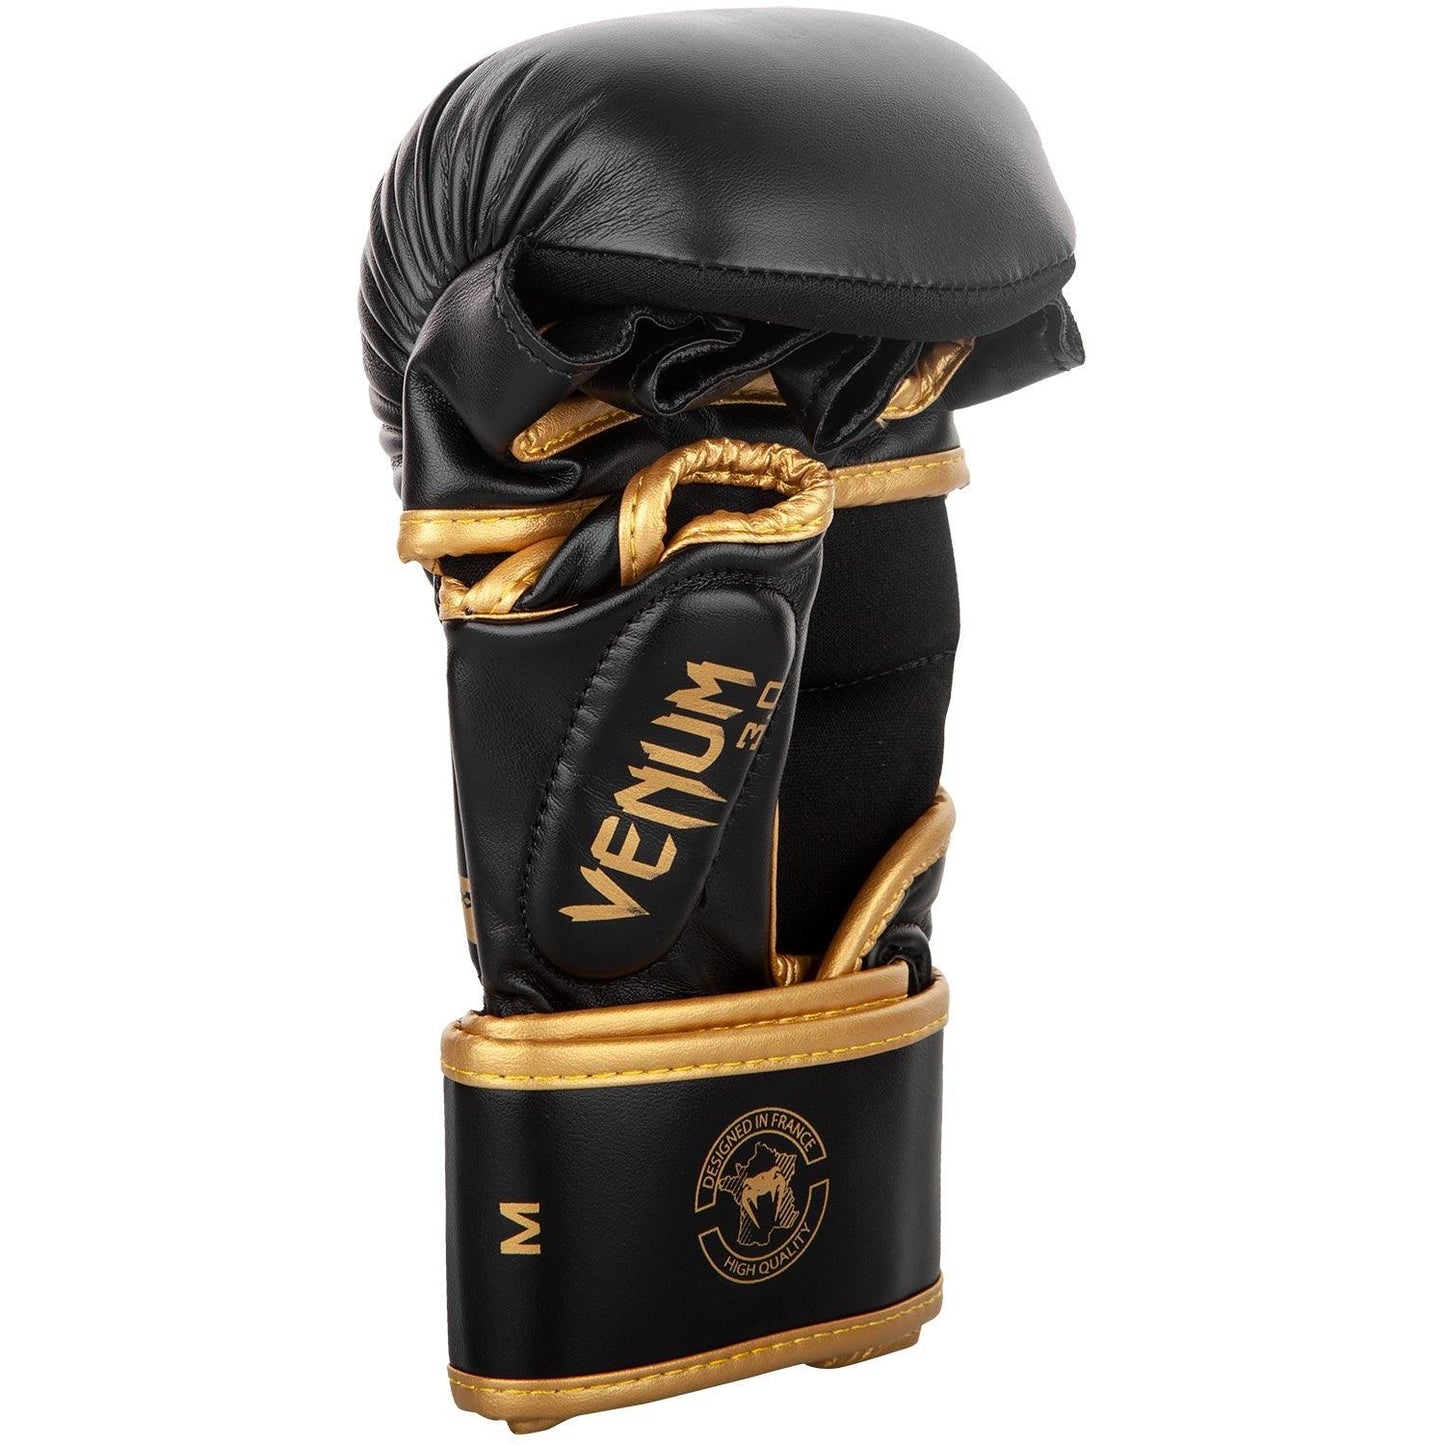 Sparring Gloves Venum Challenger 3.0 - Black/Gold L/XL